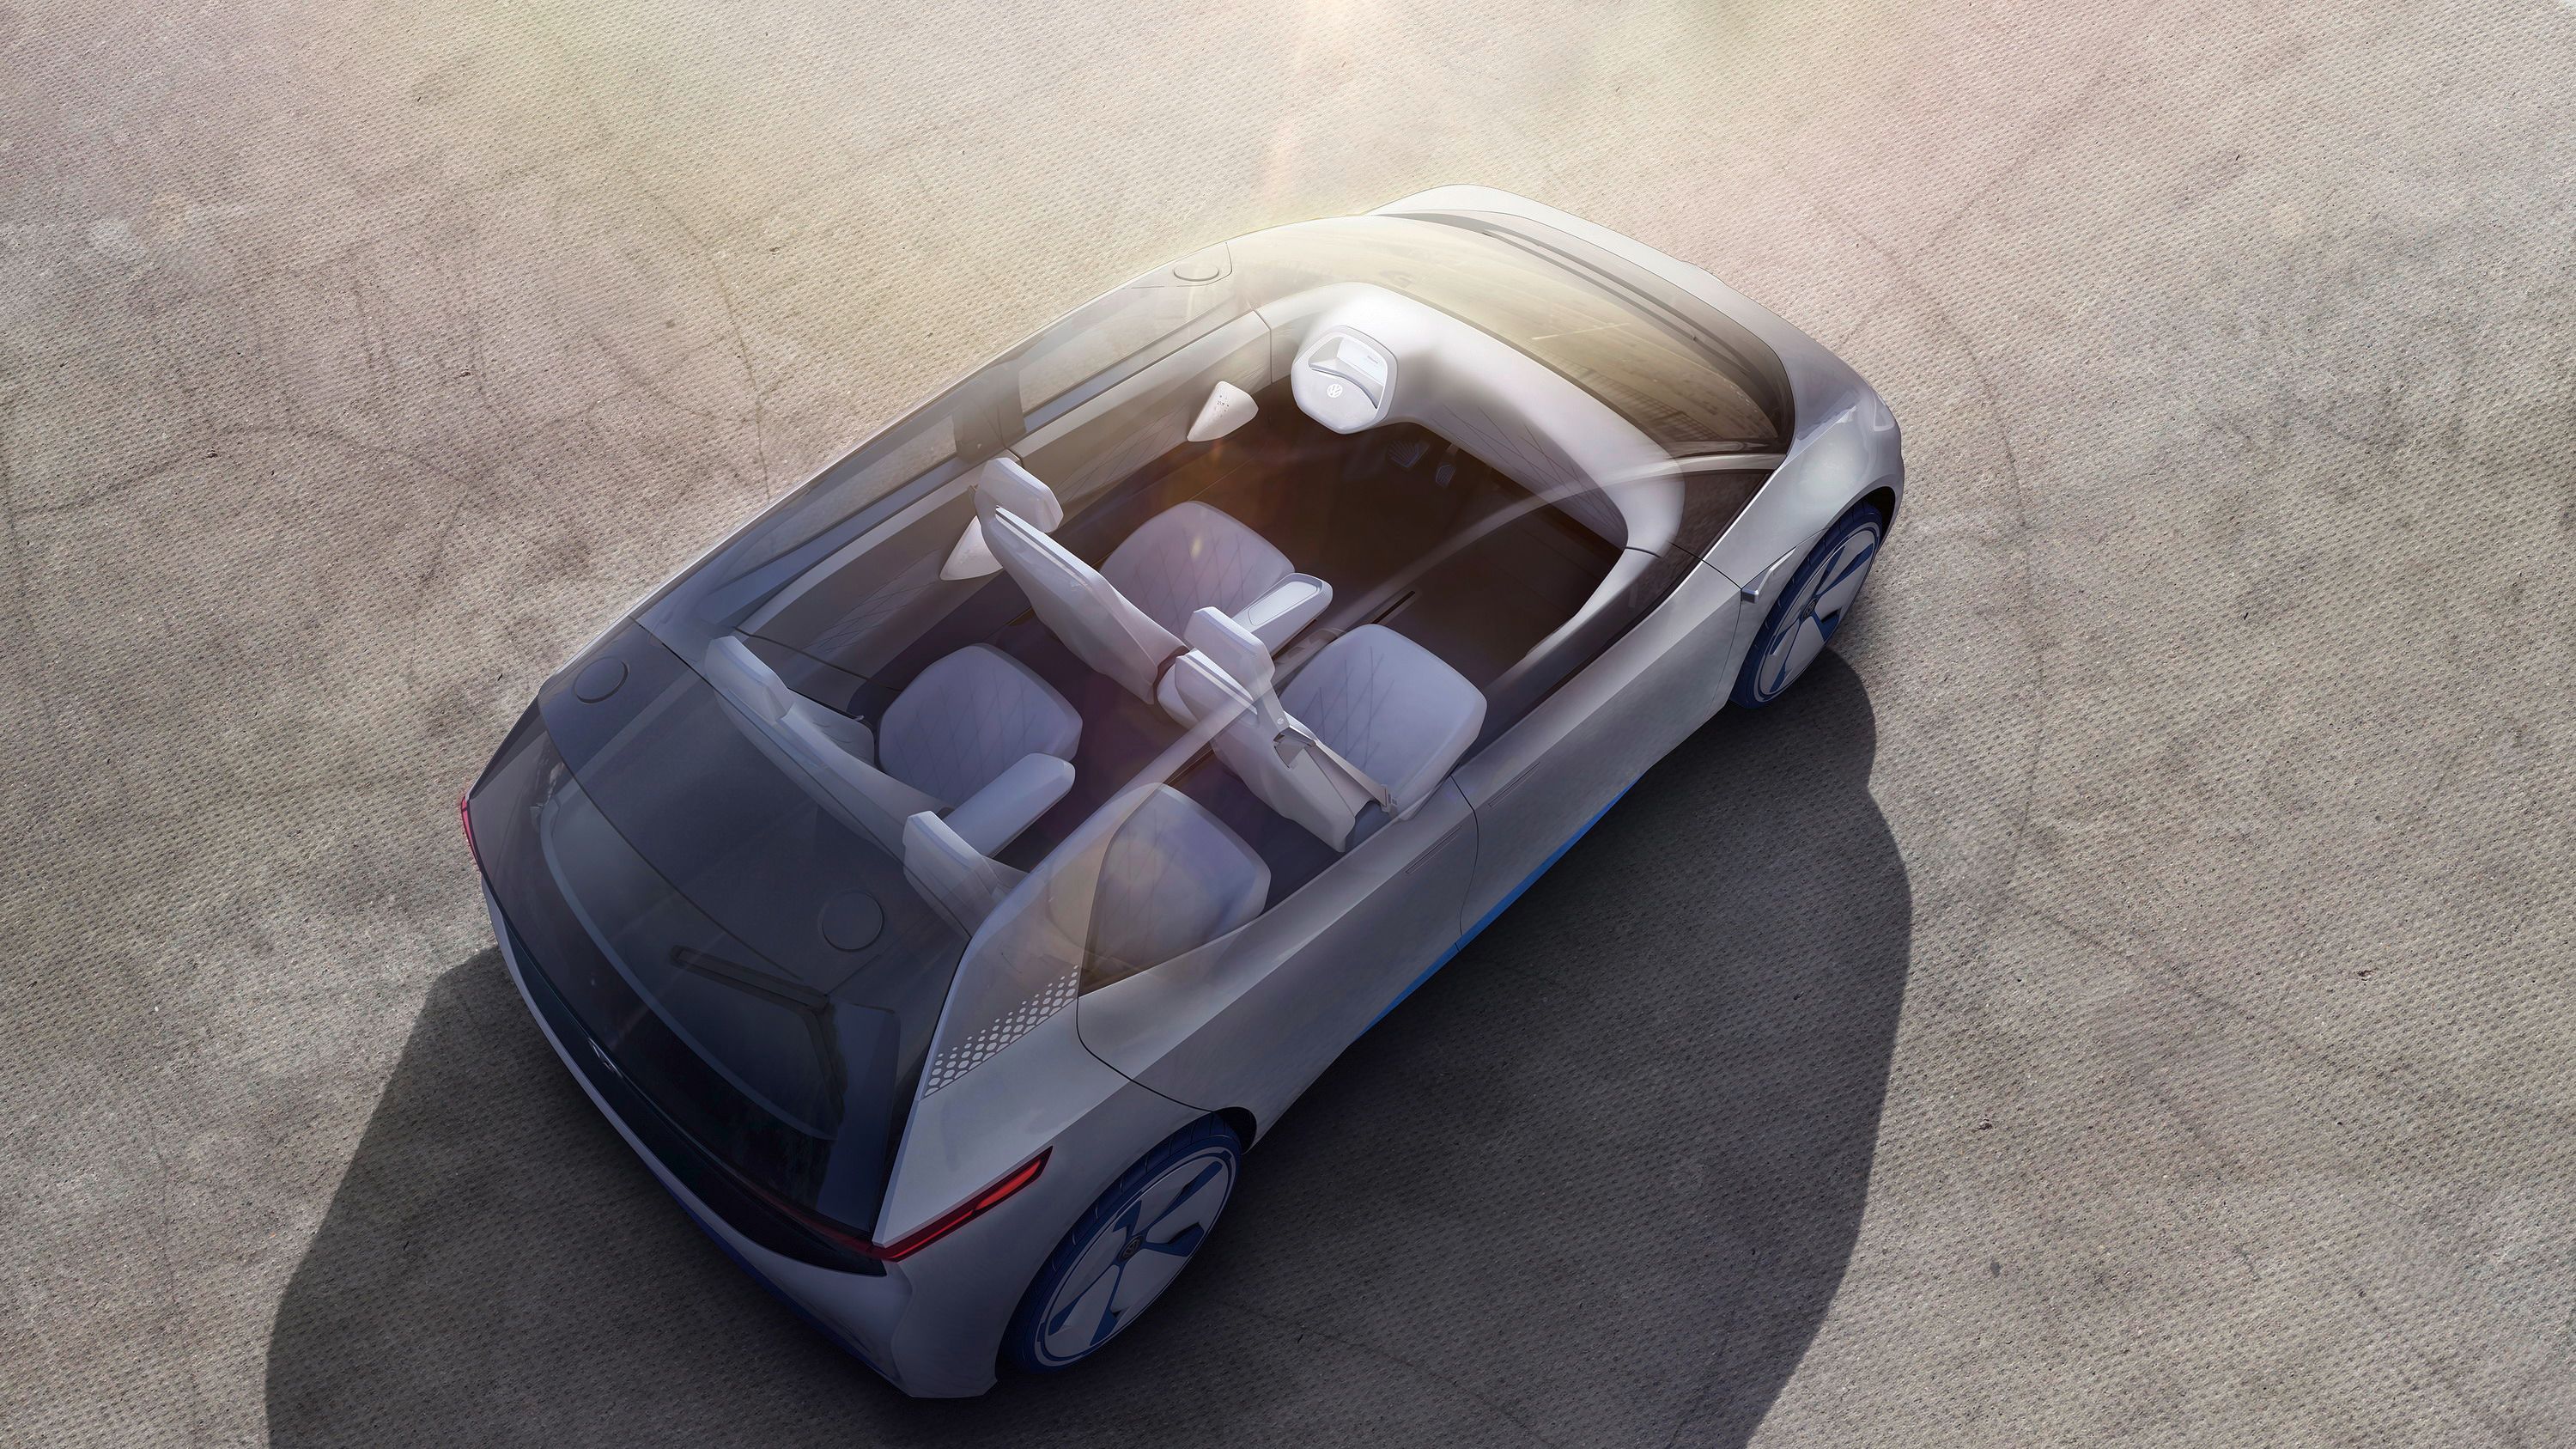 2016 Volkswagen I.D. Concept